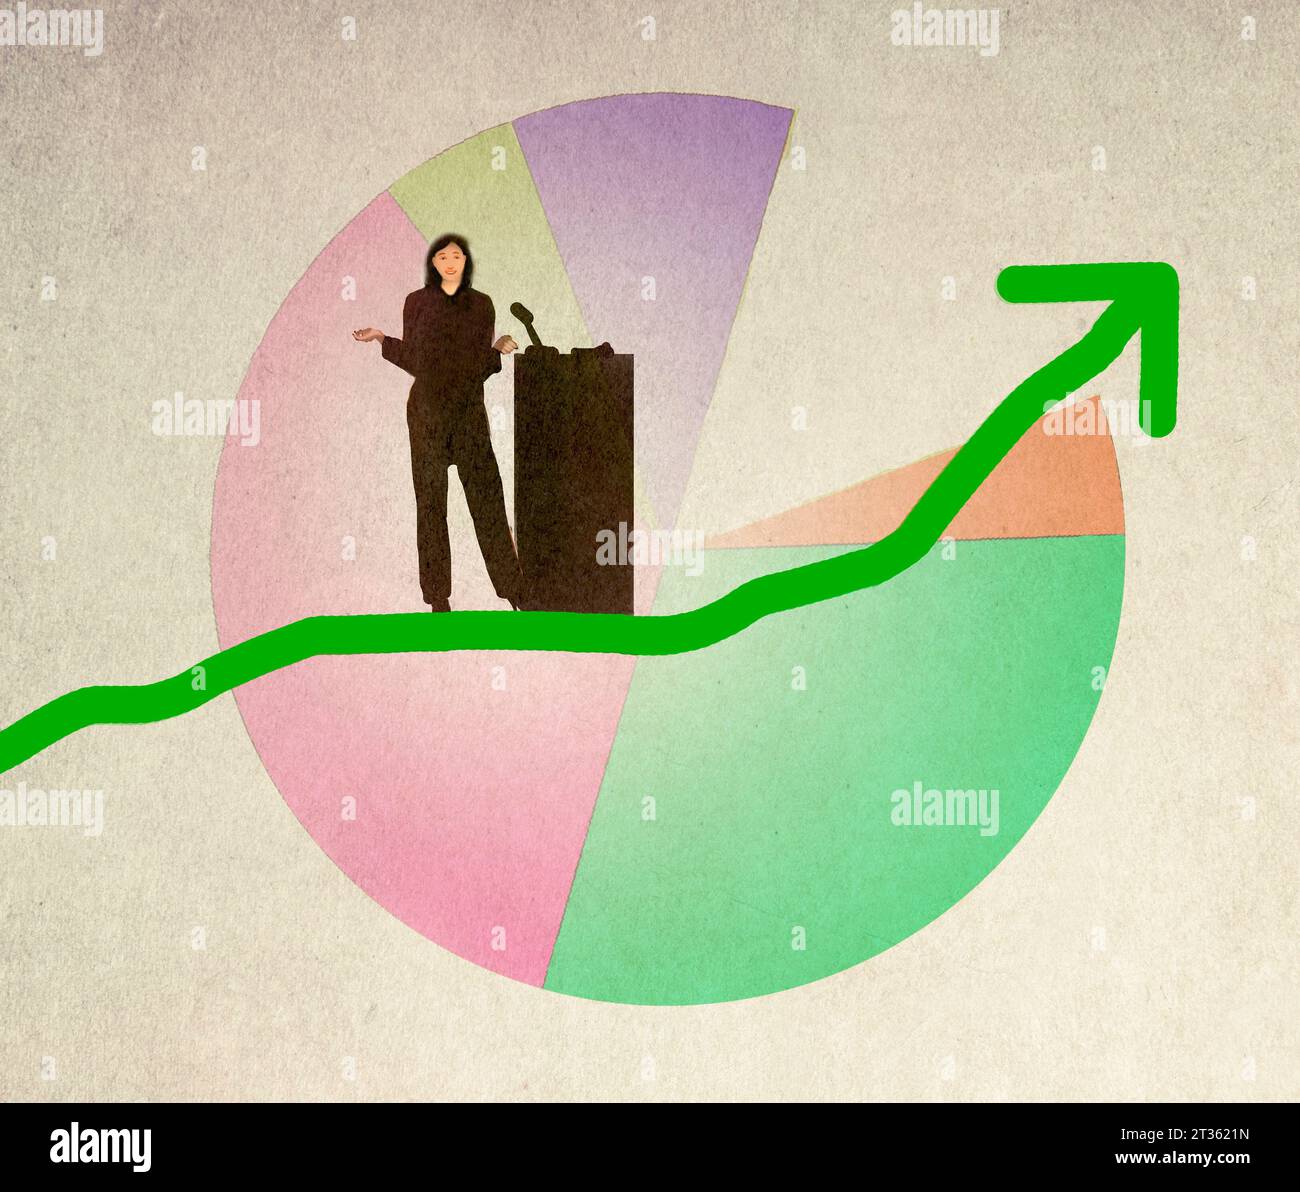 Illustration of female speaker standing on green arrow ascending against pie chart Stock Photo